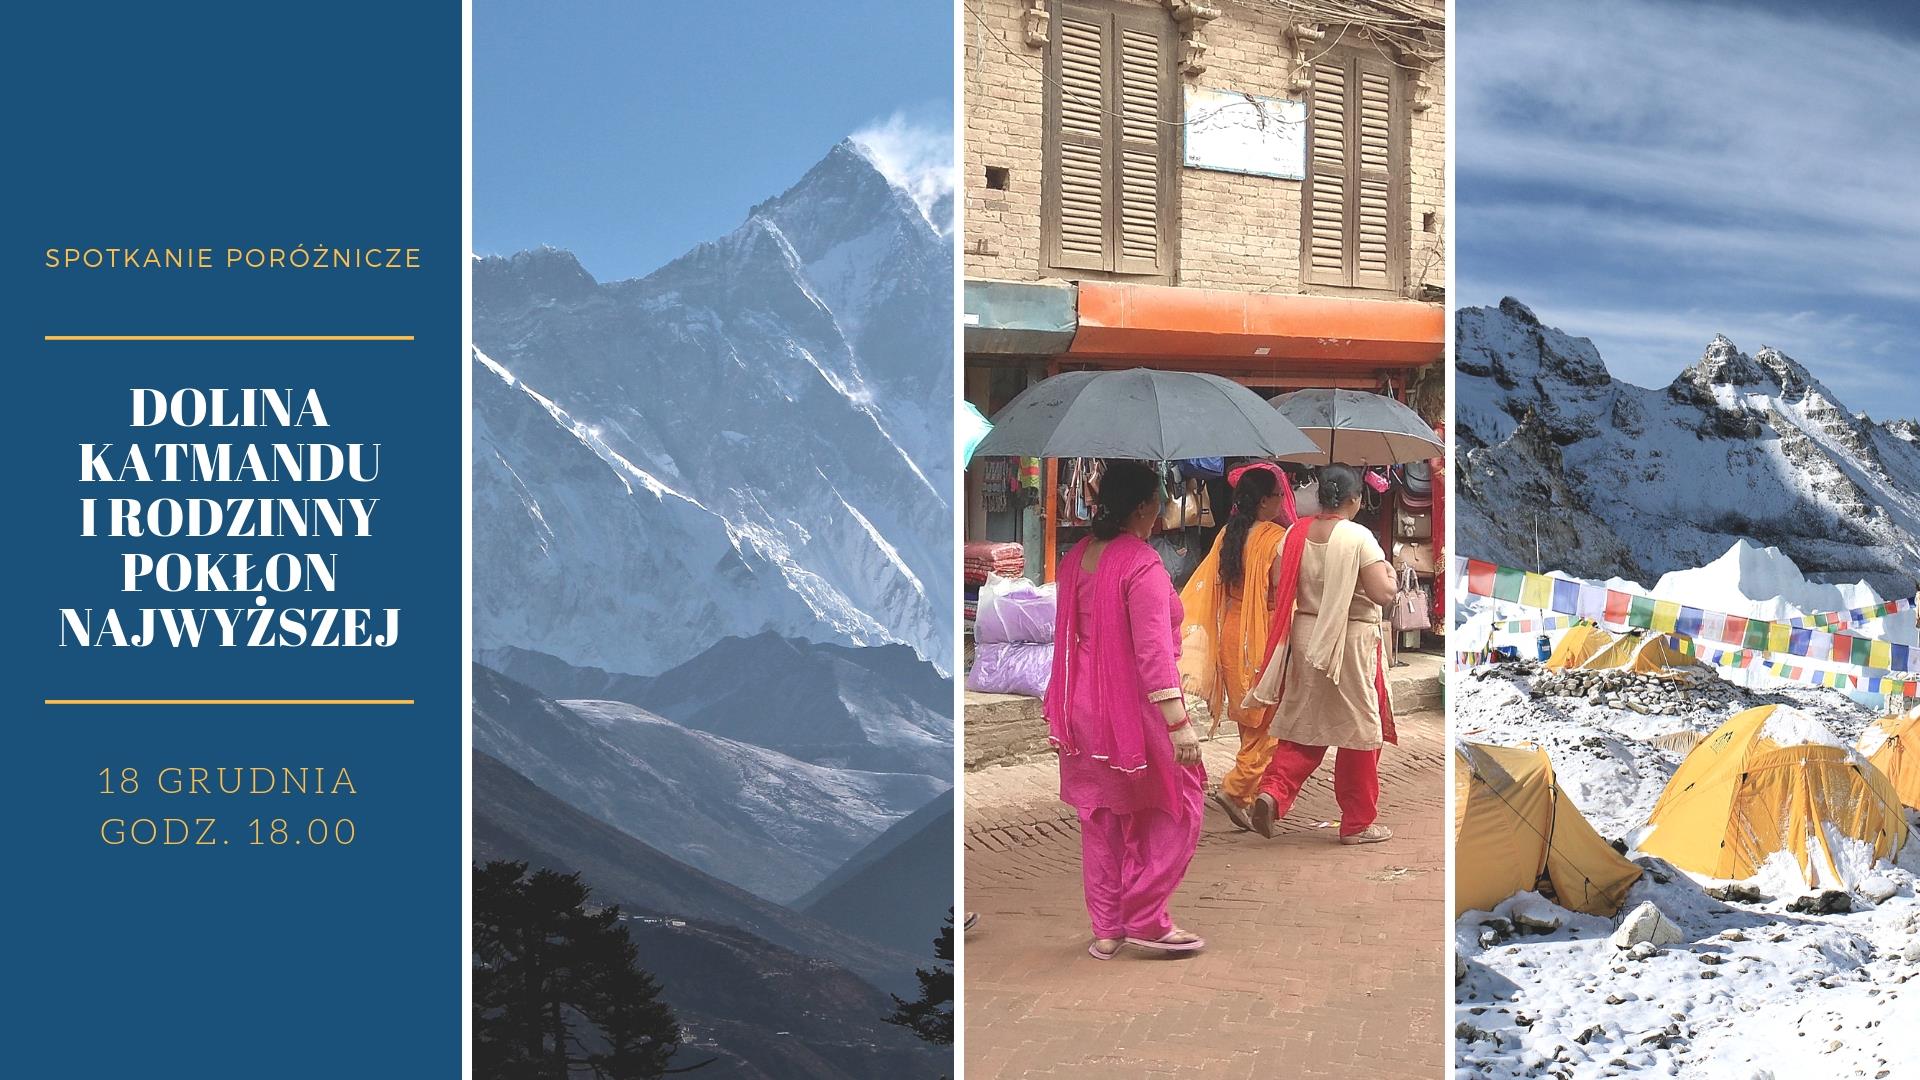 Dolina Katmandu i rodzinny pokłon Najwyższej